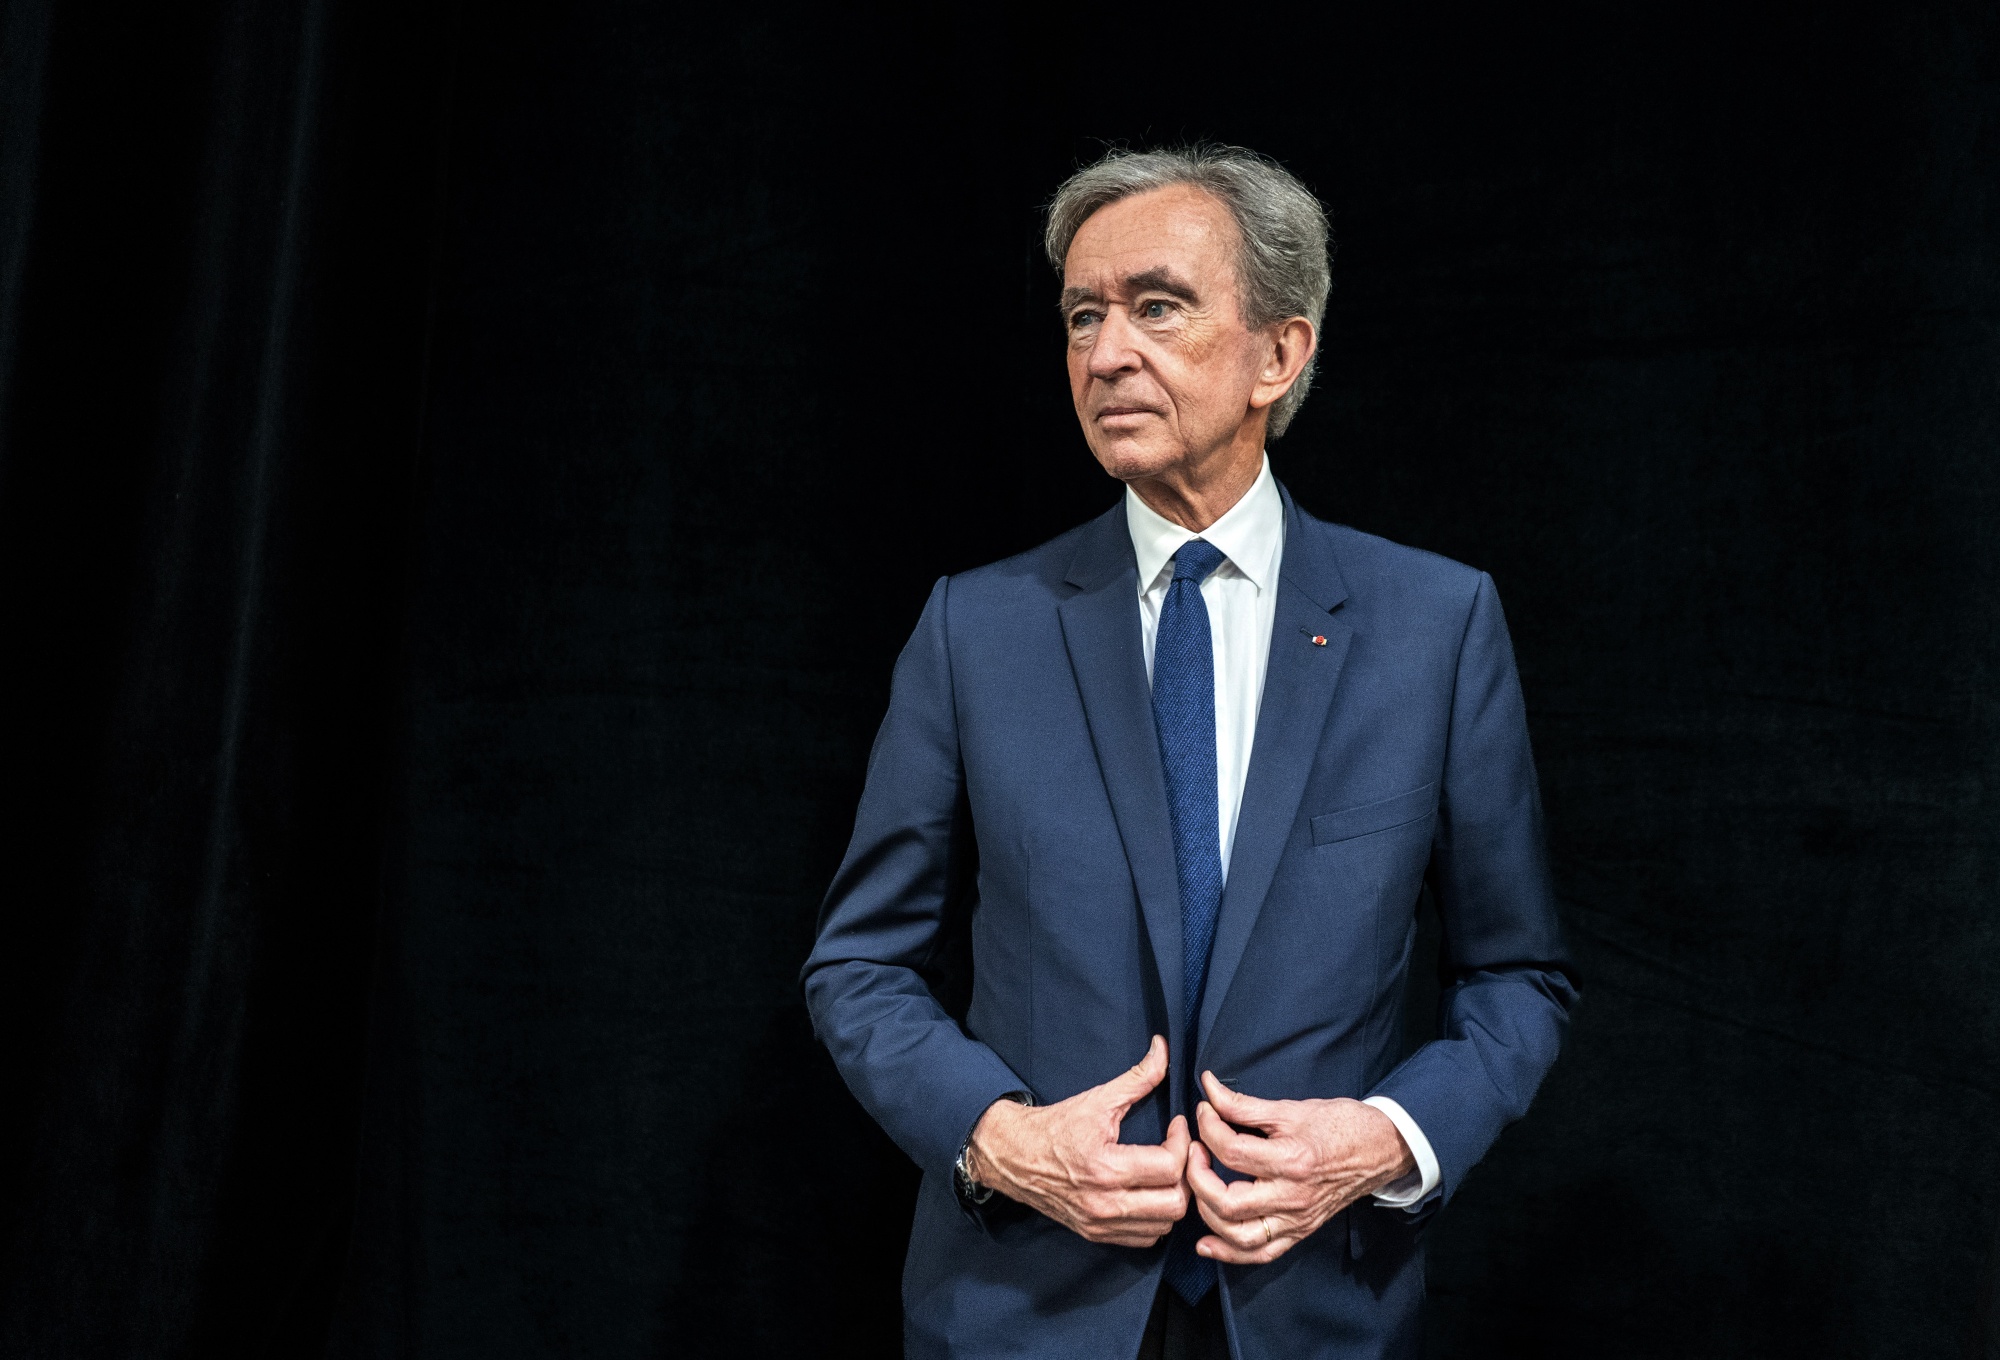 LVMH boss Bernard Arnault under investigation in Paris over